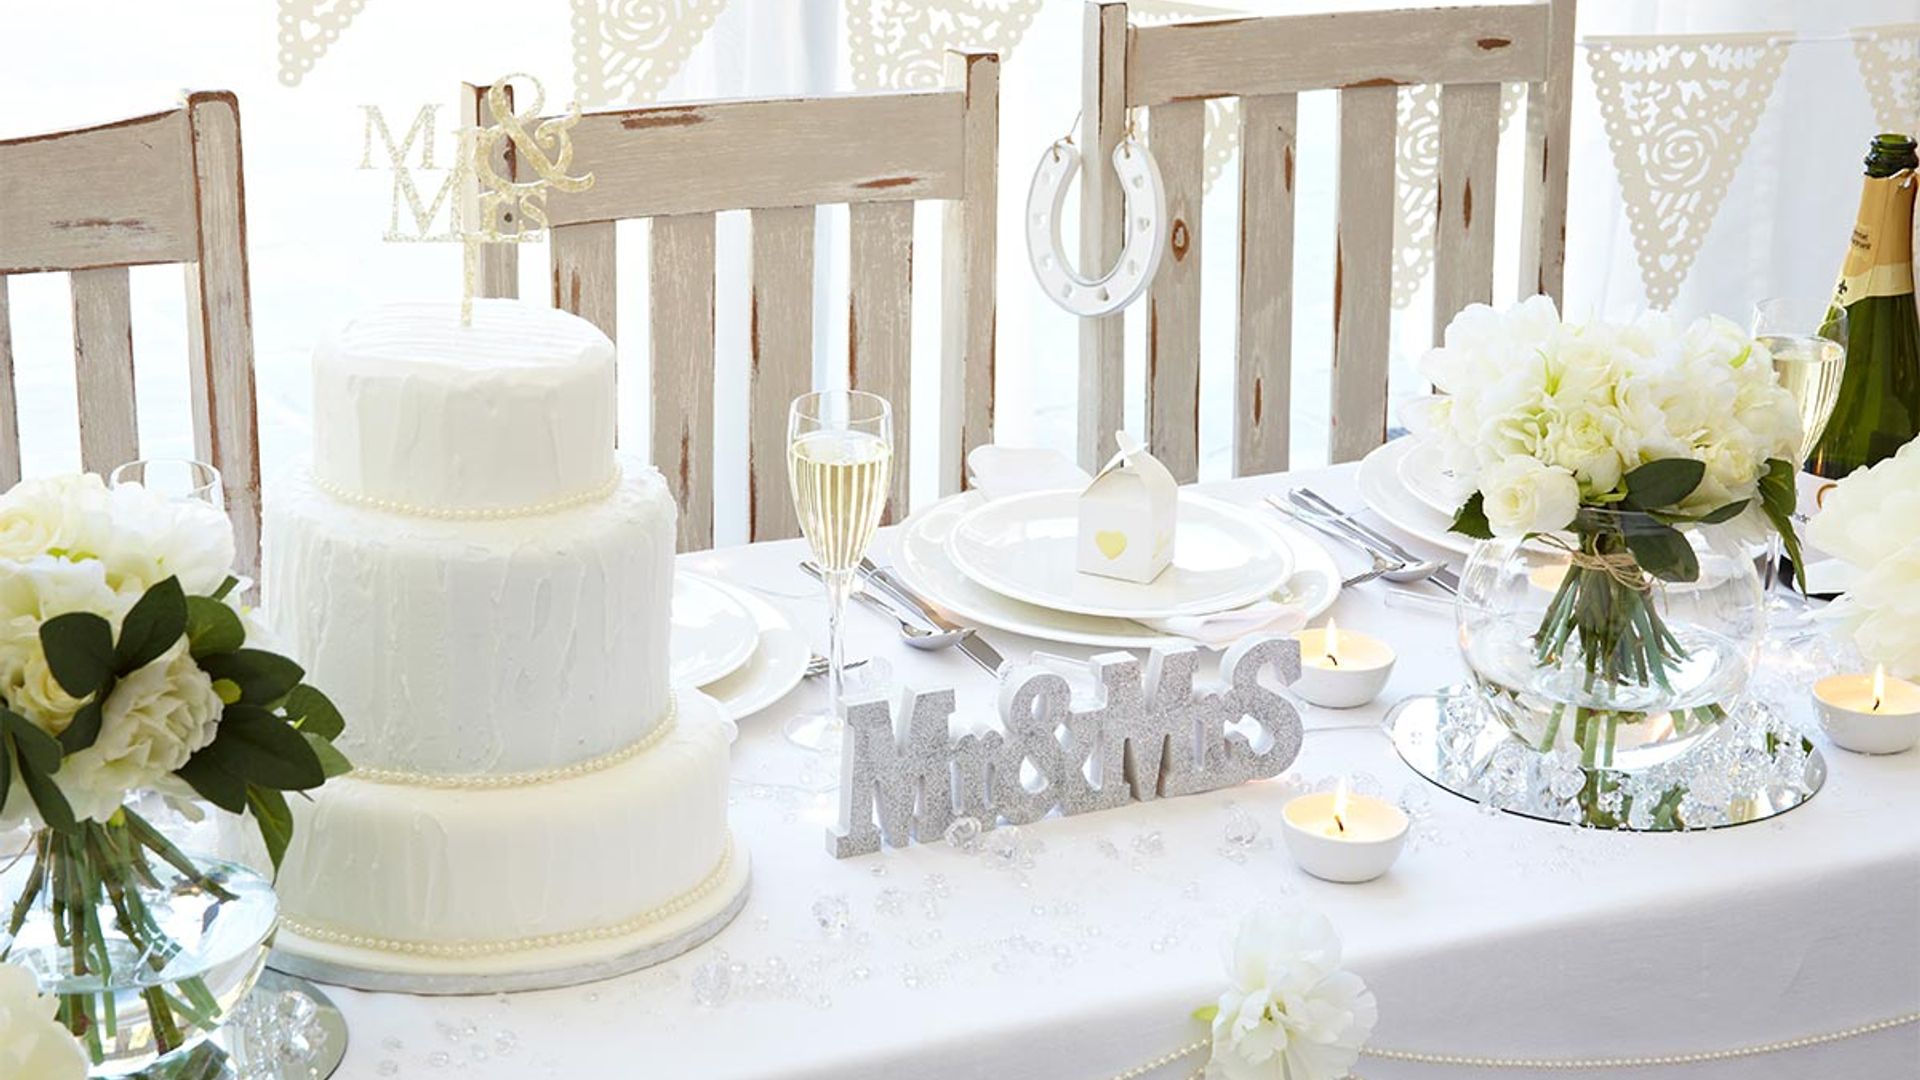 Poundland-wedding-decorations